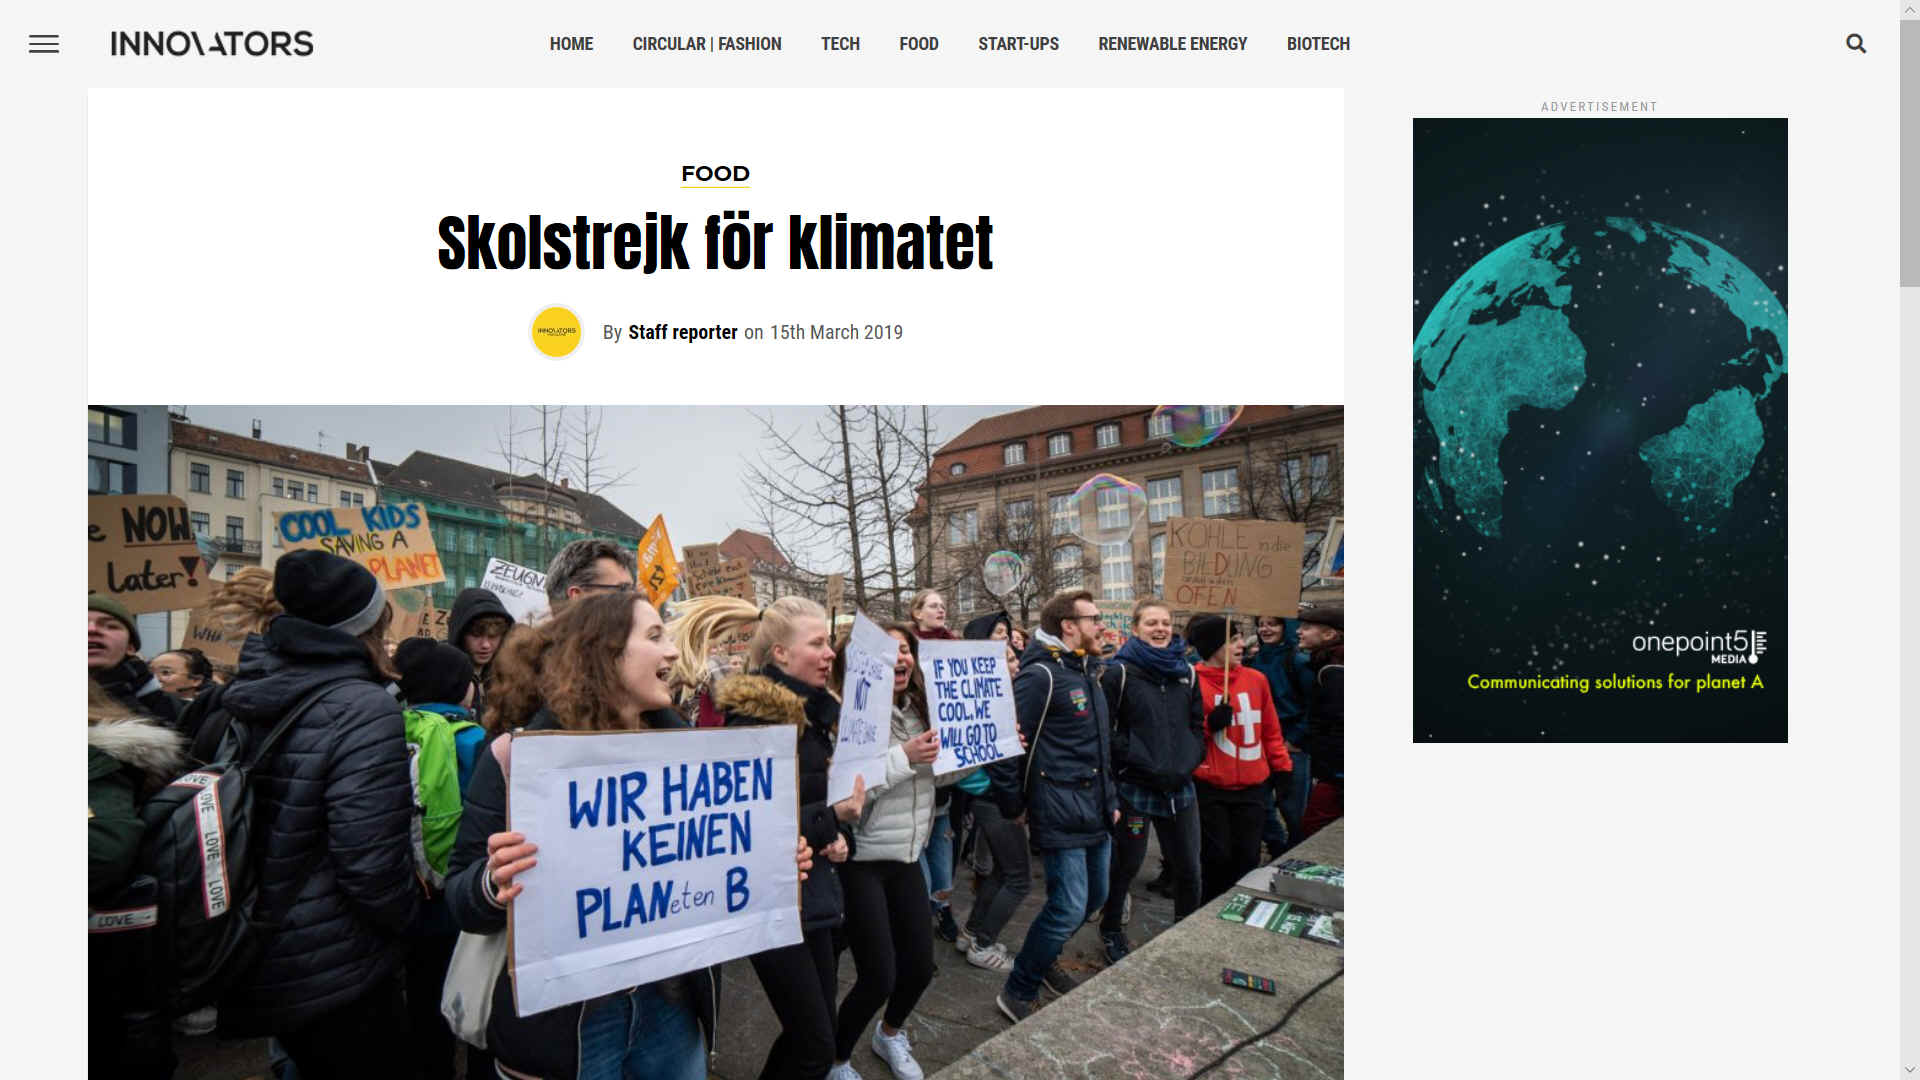 Skolstrejk for klimatet means schools strike for the climate